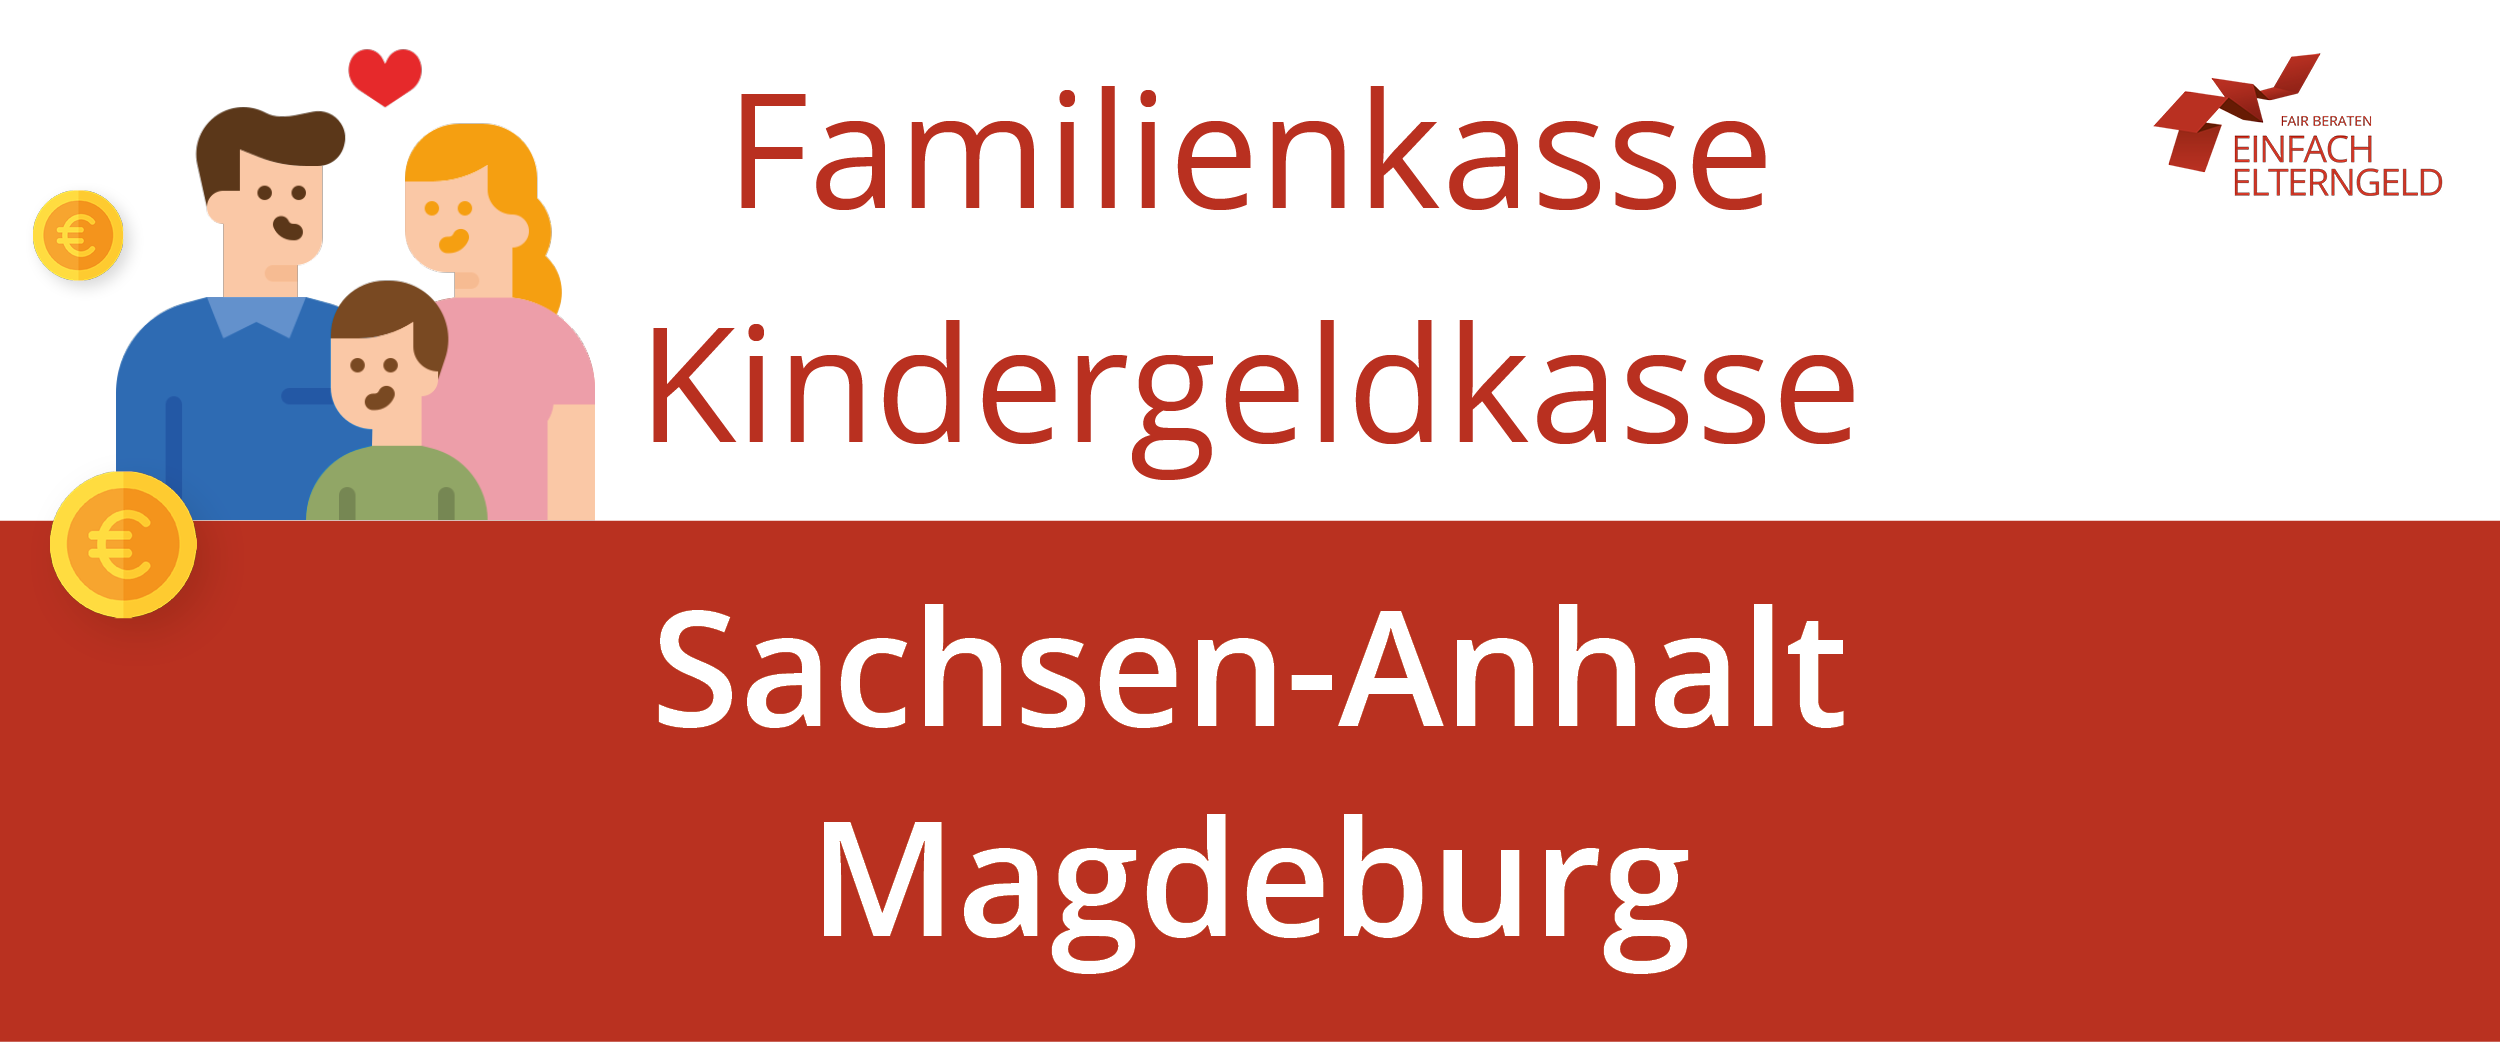 Familienkasse Kindergeldkasse Sachsen-Anhalt Magdeburg - So erreichen Sie die Familienkasse.